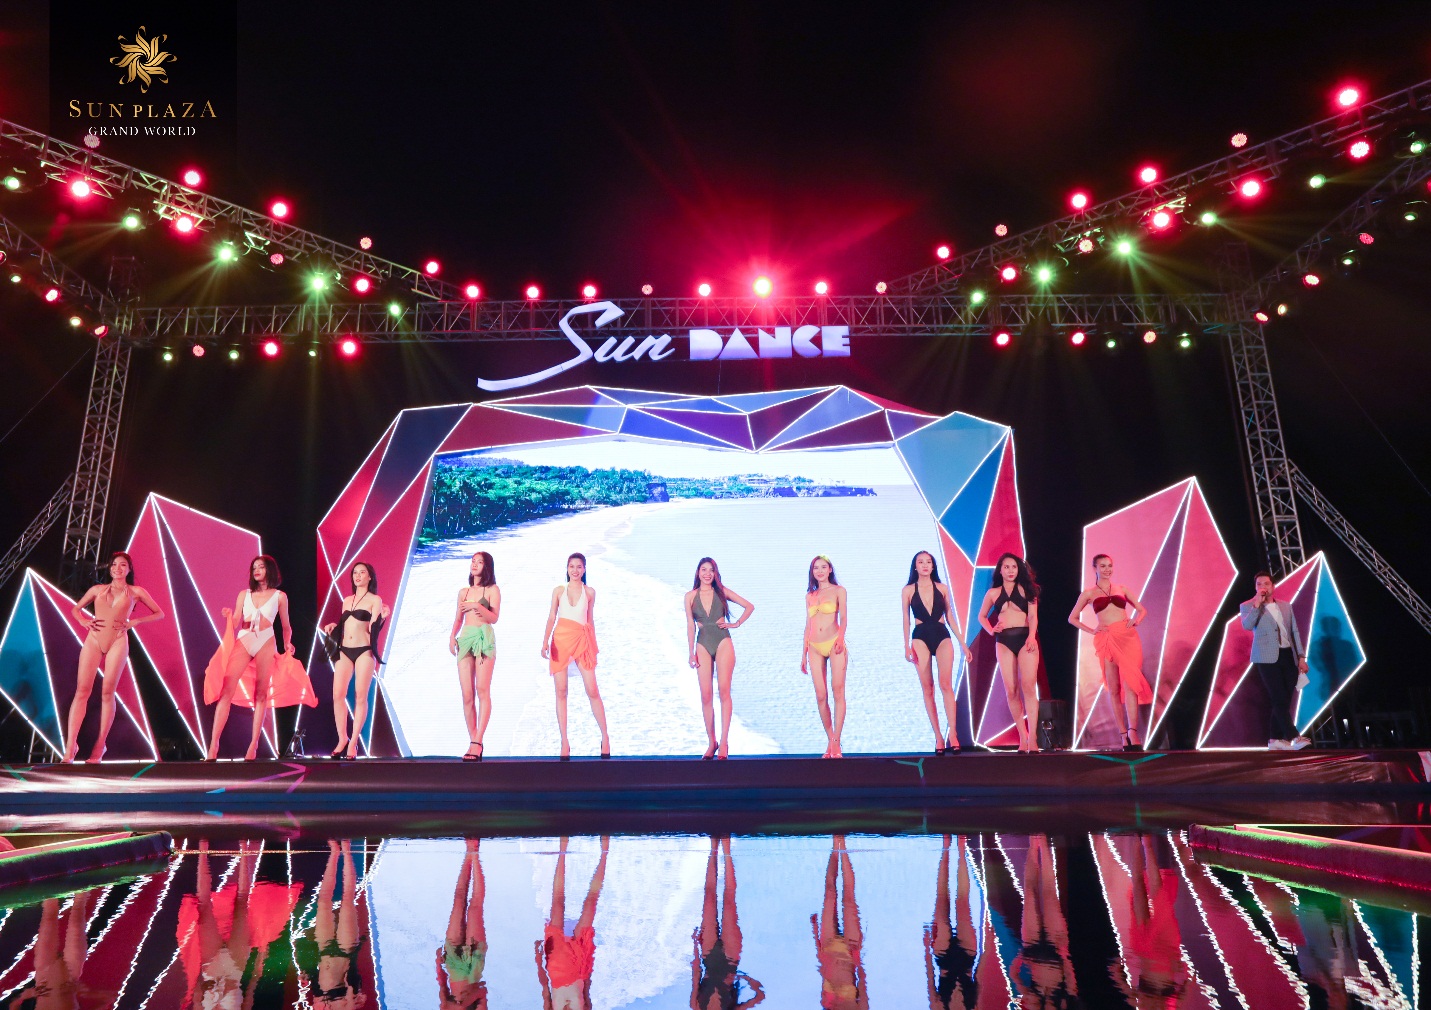 Đêm Sun Dance mở màn với bikini show “sun on the Sea”. Tiết mục thu hút vạn ánh nhìn dõi theo bước chân của những người đẹp nóng bỏng.